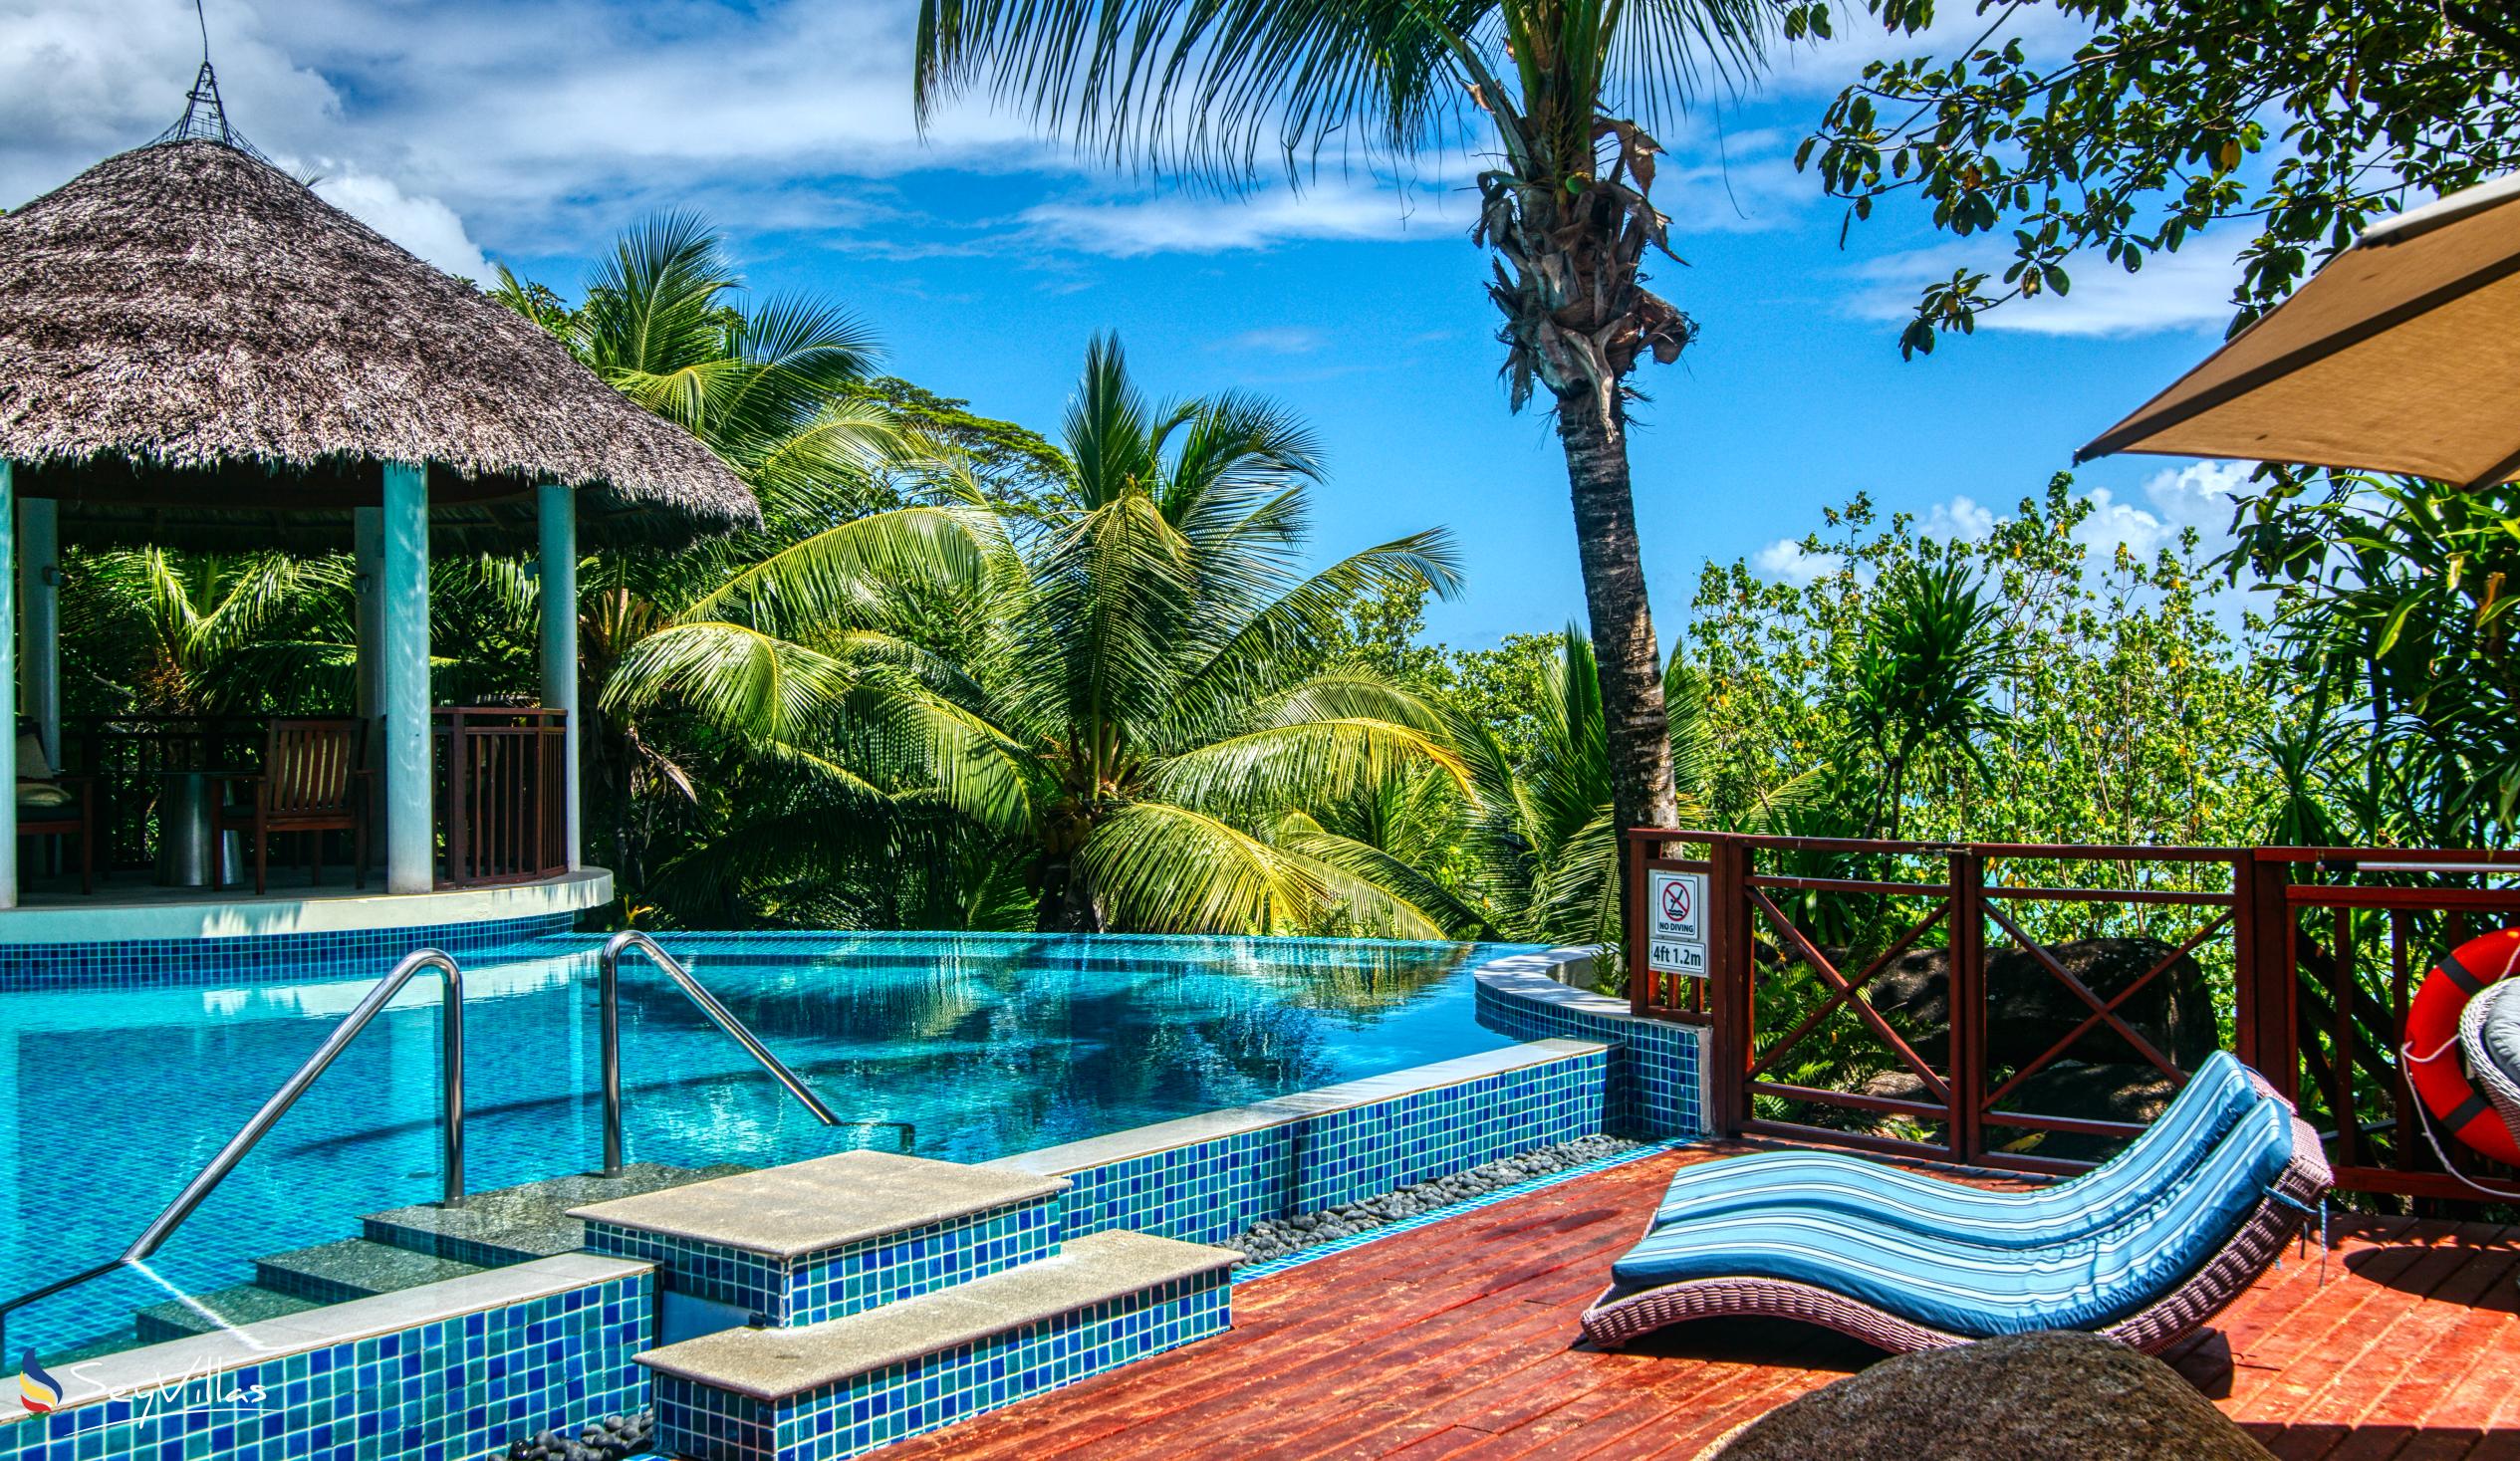 Foto 85: Hilton Seychelles Labriz Resort & Spa - Two Bedroom Silhouette Estate - Silhouette Island (Seychellen)